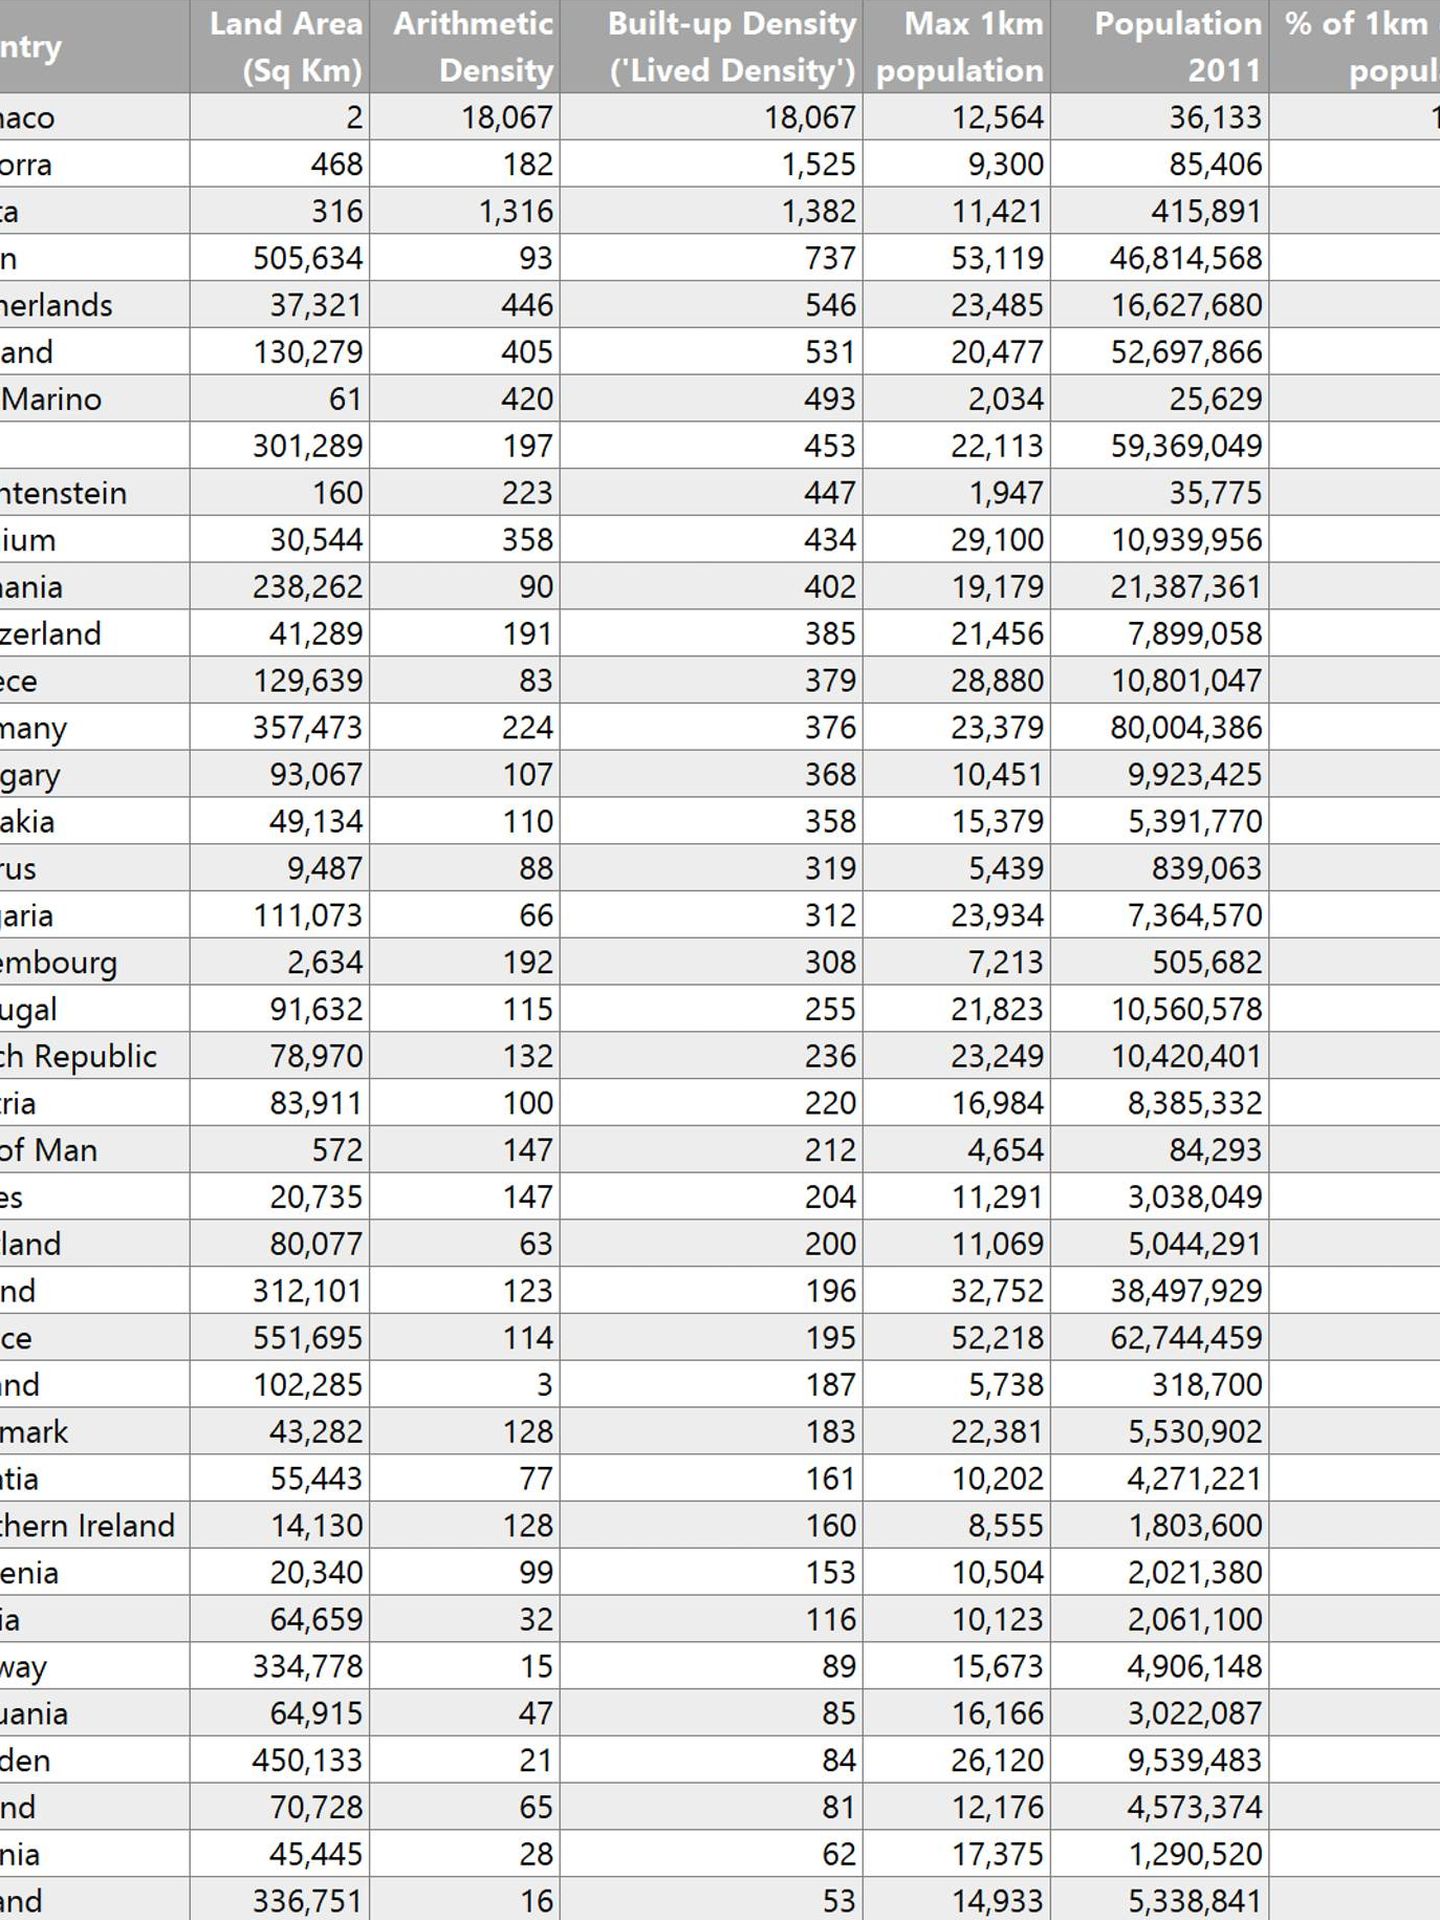 Clasificación realizada por Alasdair Rae de los países más densamente poblados según sus cálculos en 2011.